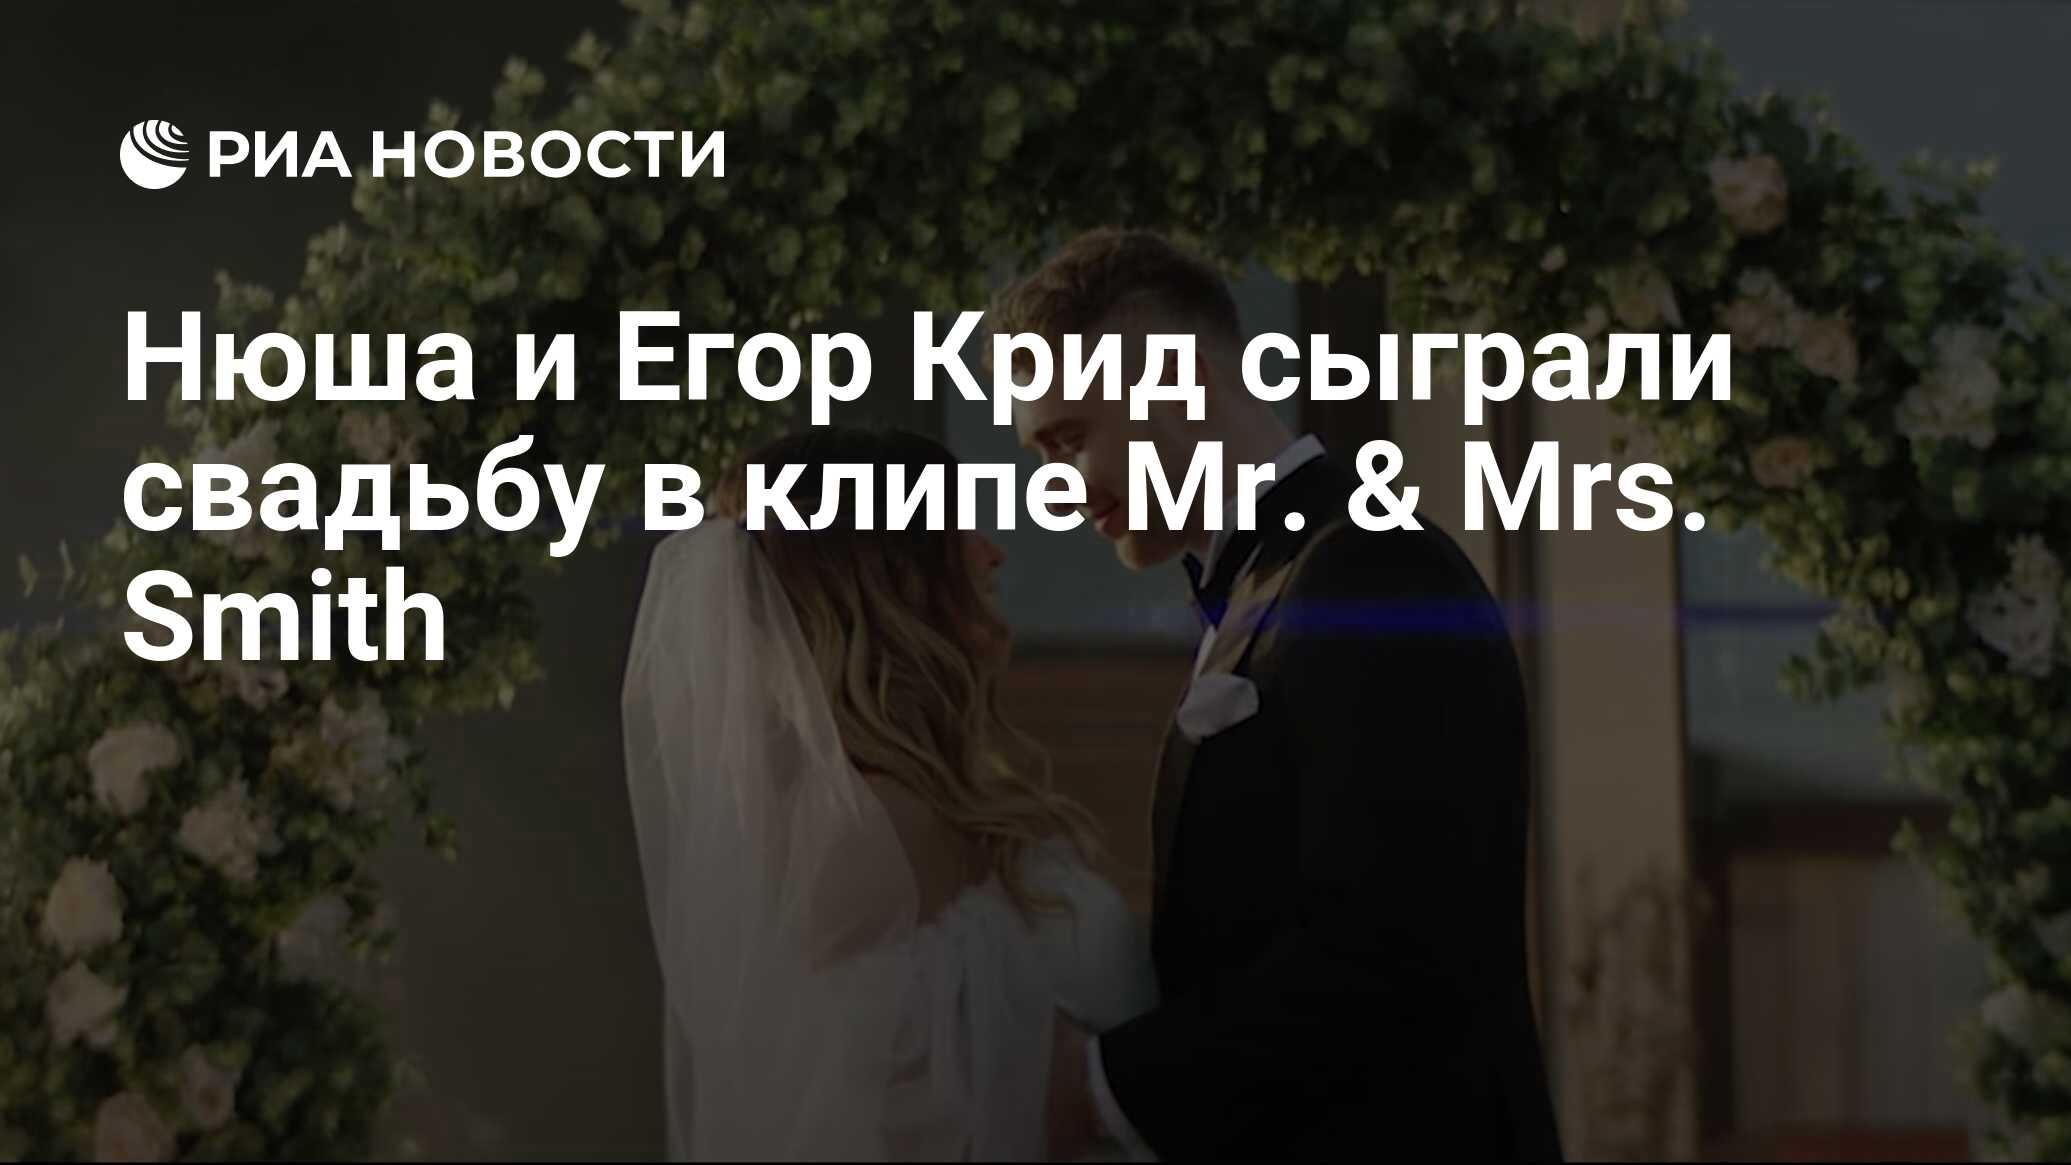 Свадьба Егора Крида 2020